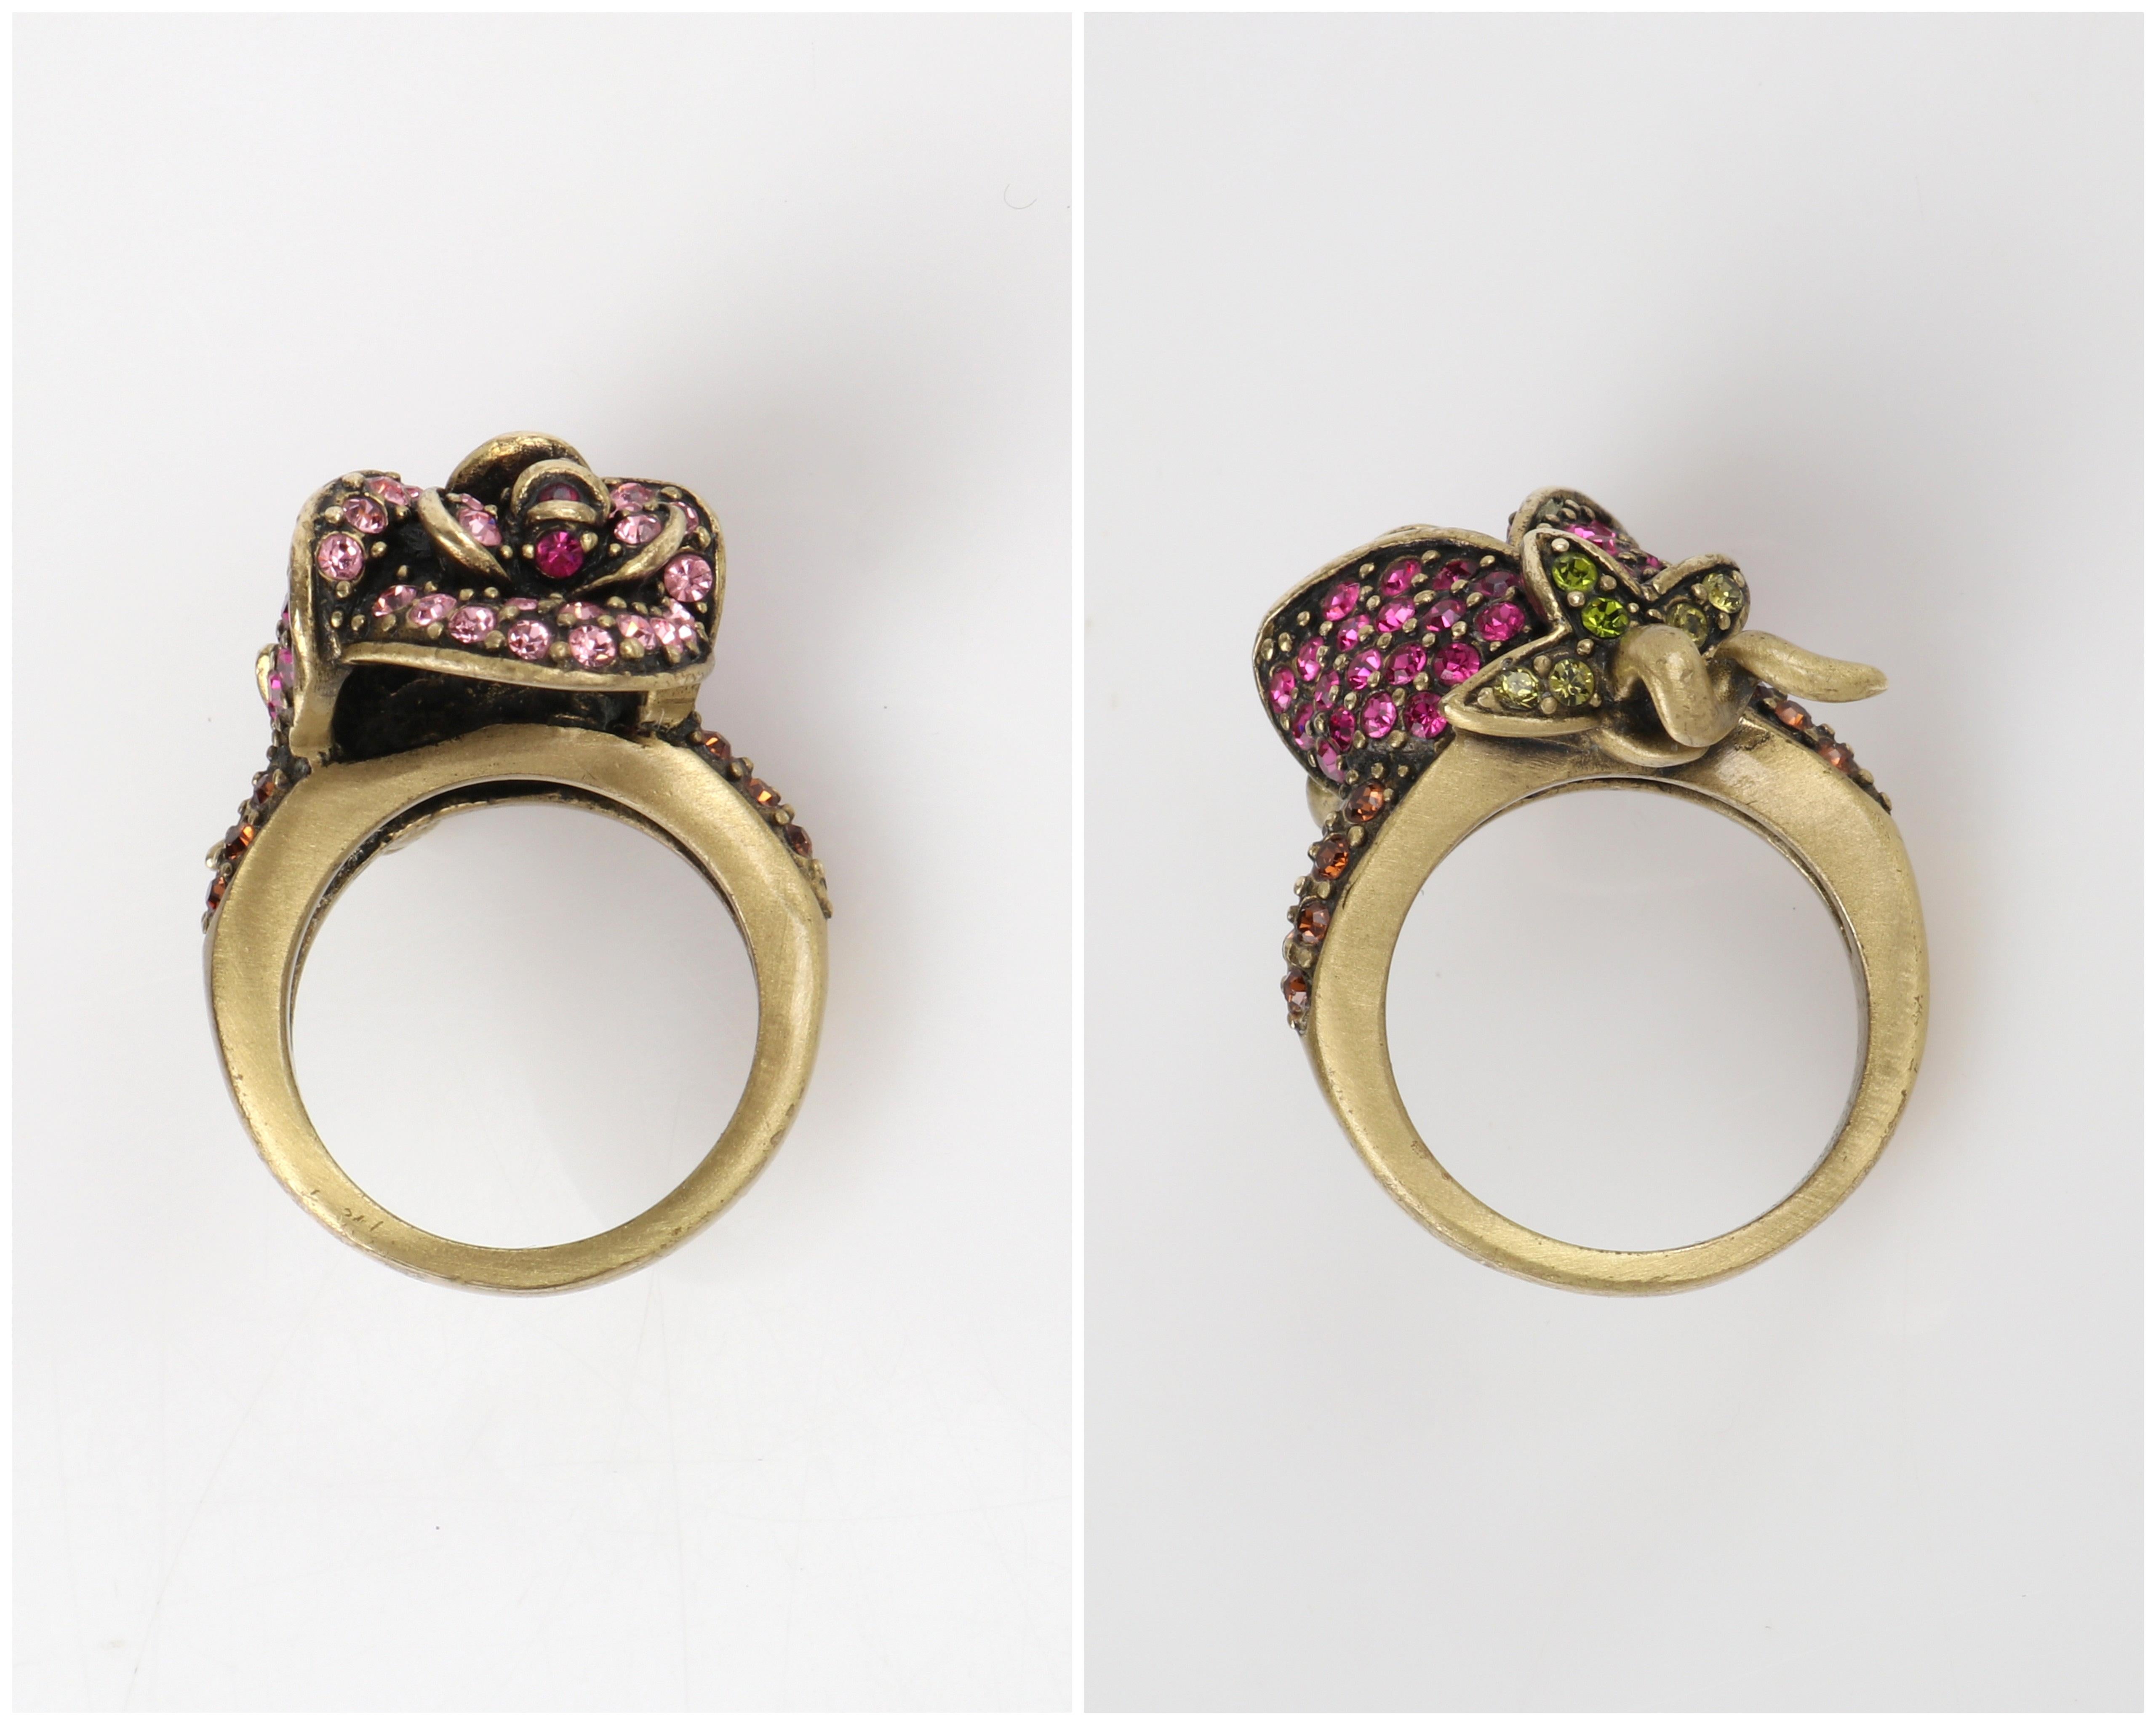 HEIDI DAUS c.2014 “Climbing Roses” Pink Green Swarovski Crystal Floral Rose Ring For Sale 1